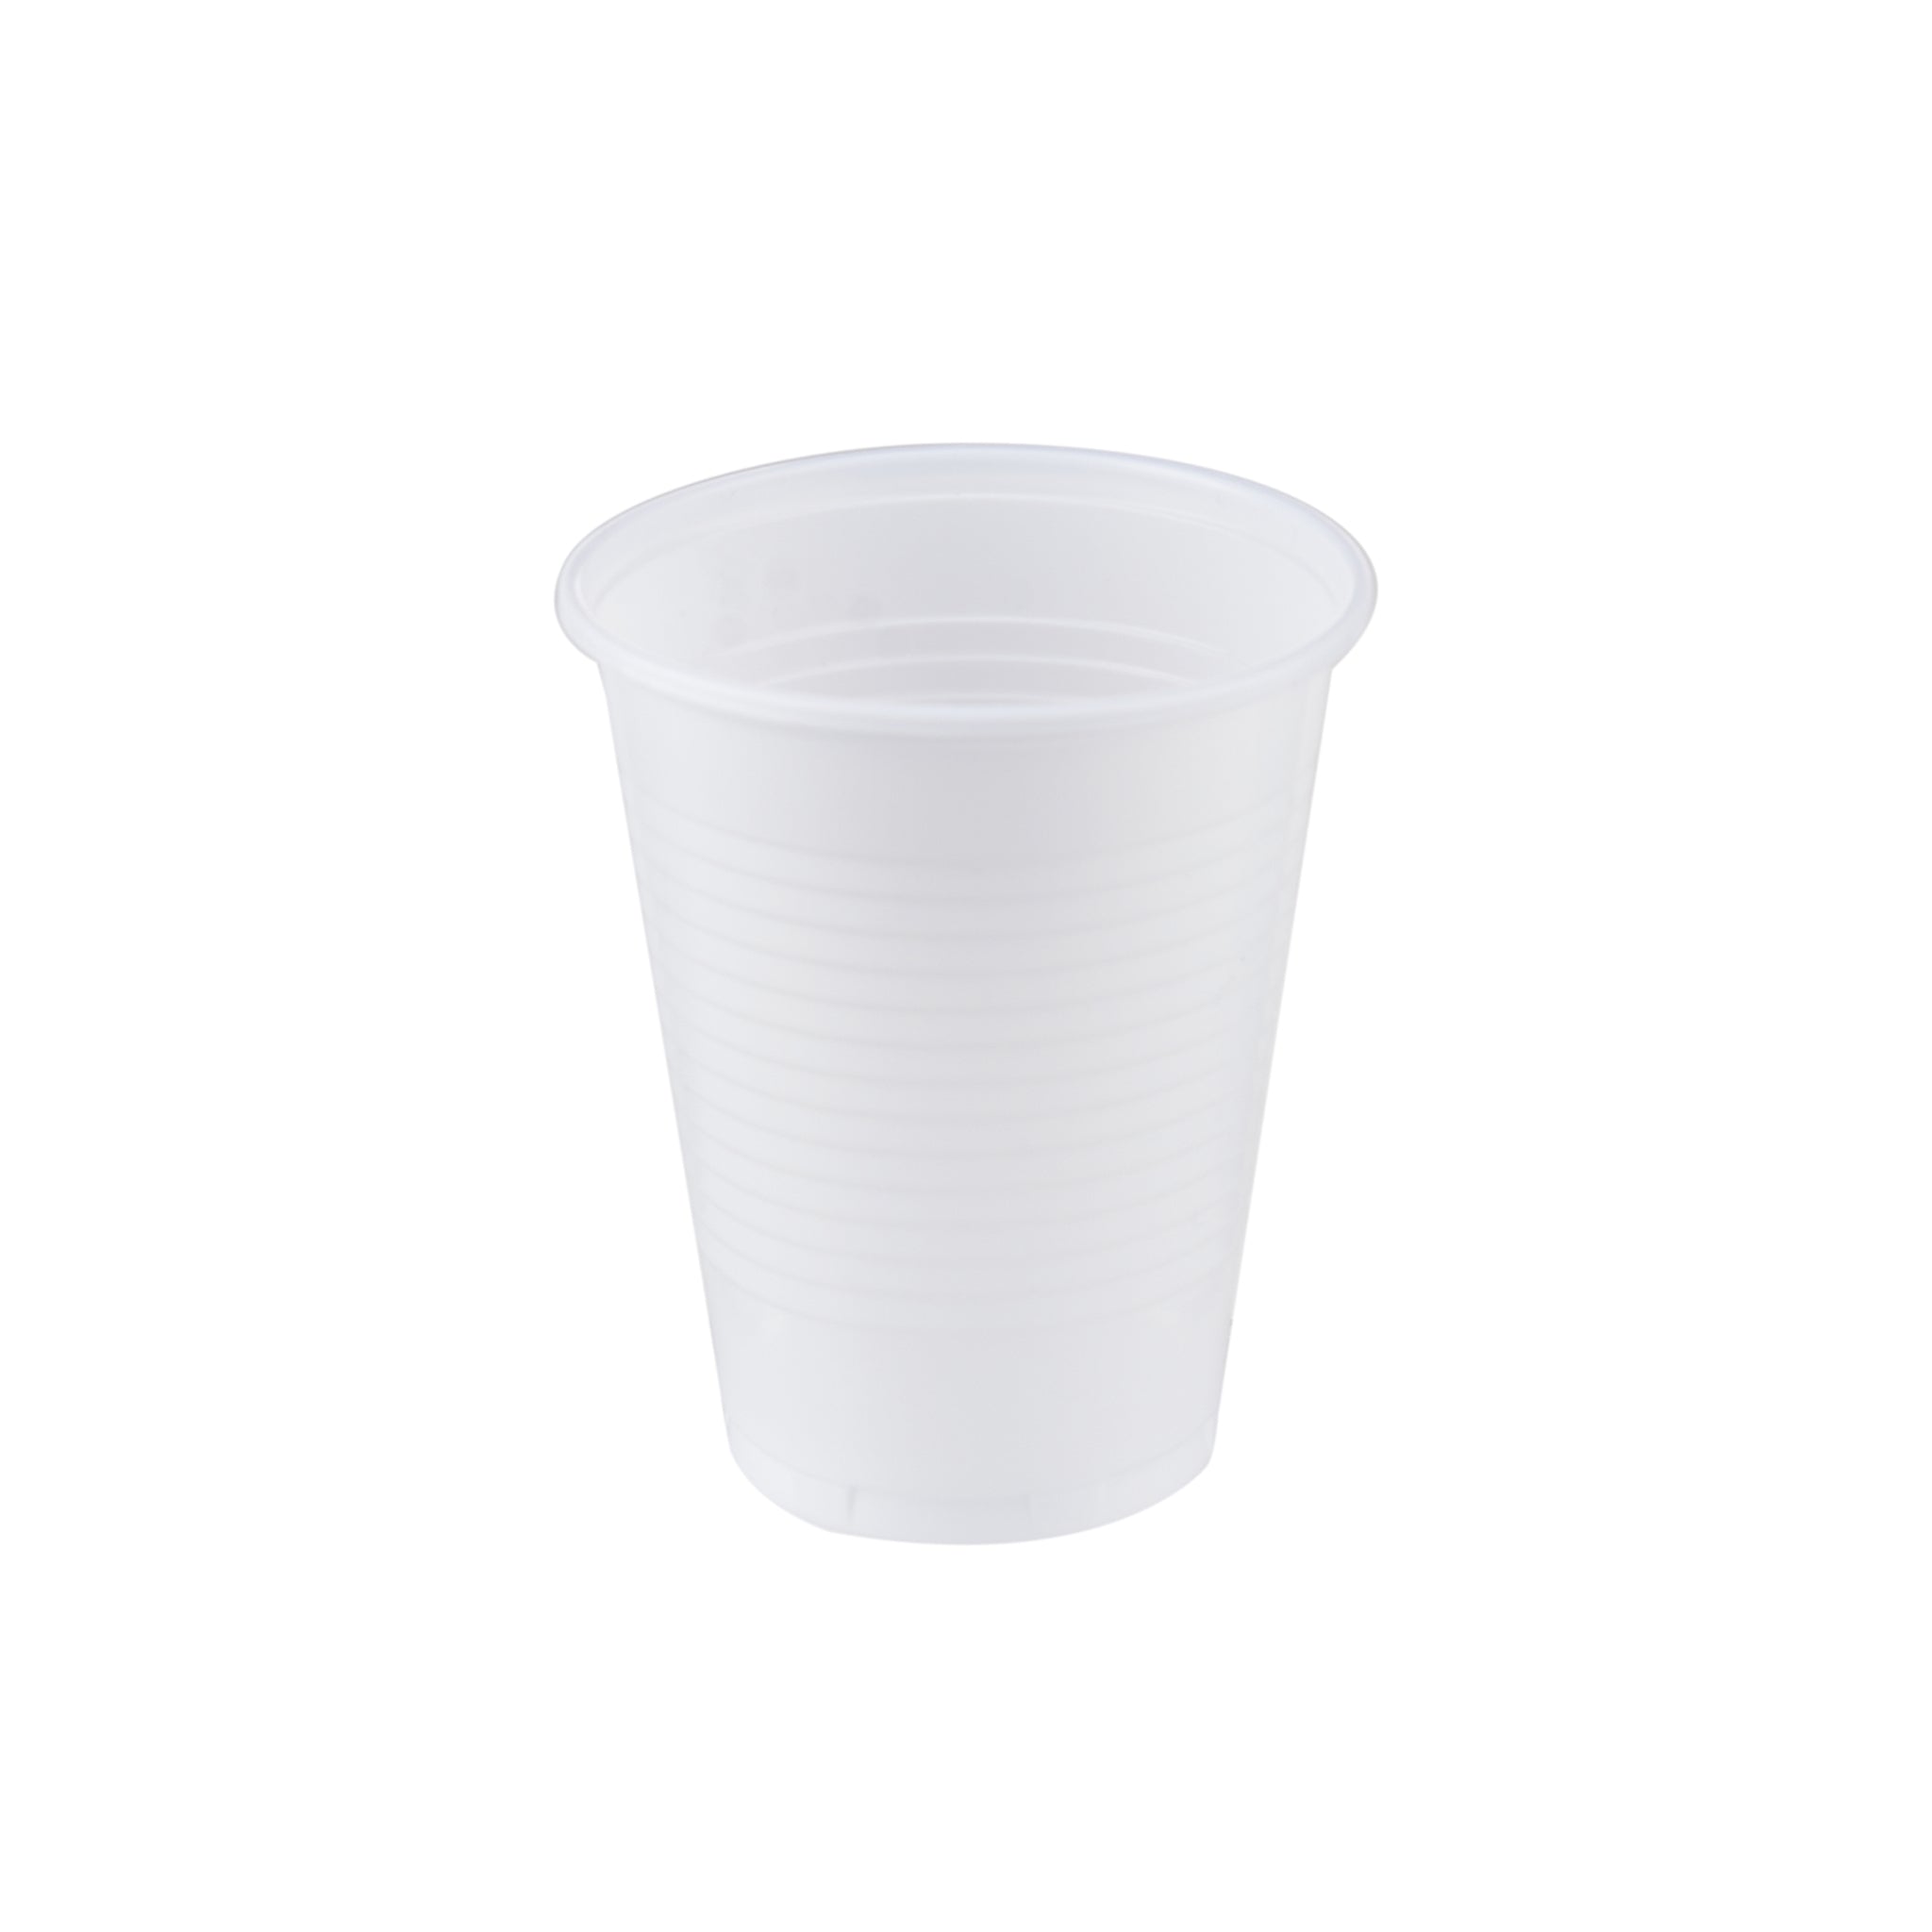 2+1 Plastic Cup 6 Oz 150 Pieces - hotpackwebstore.com